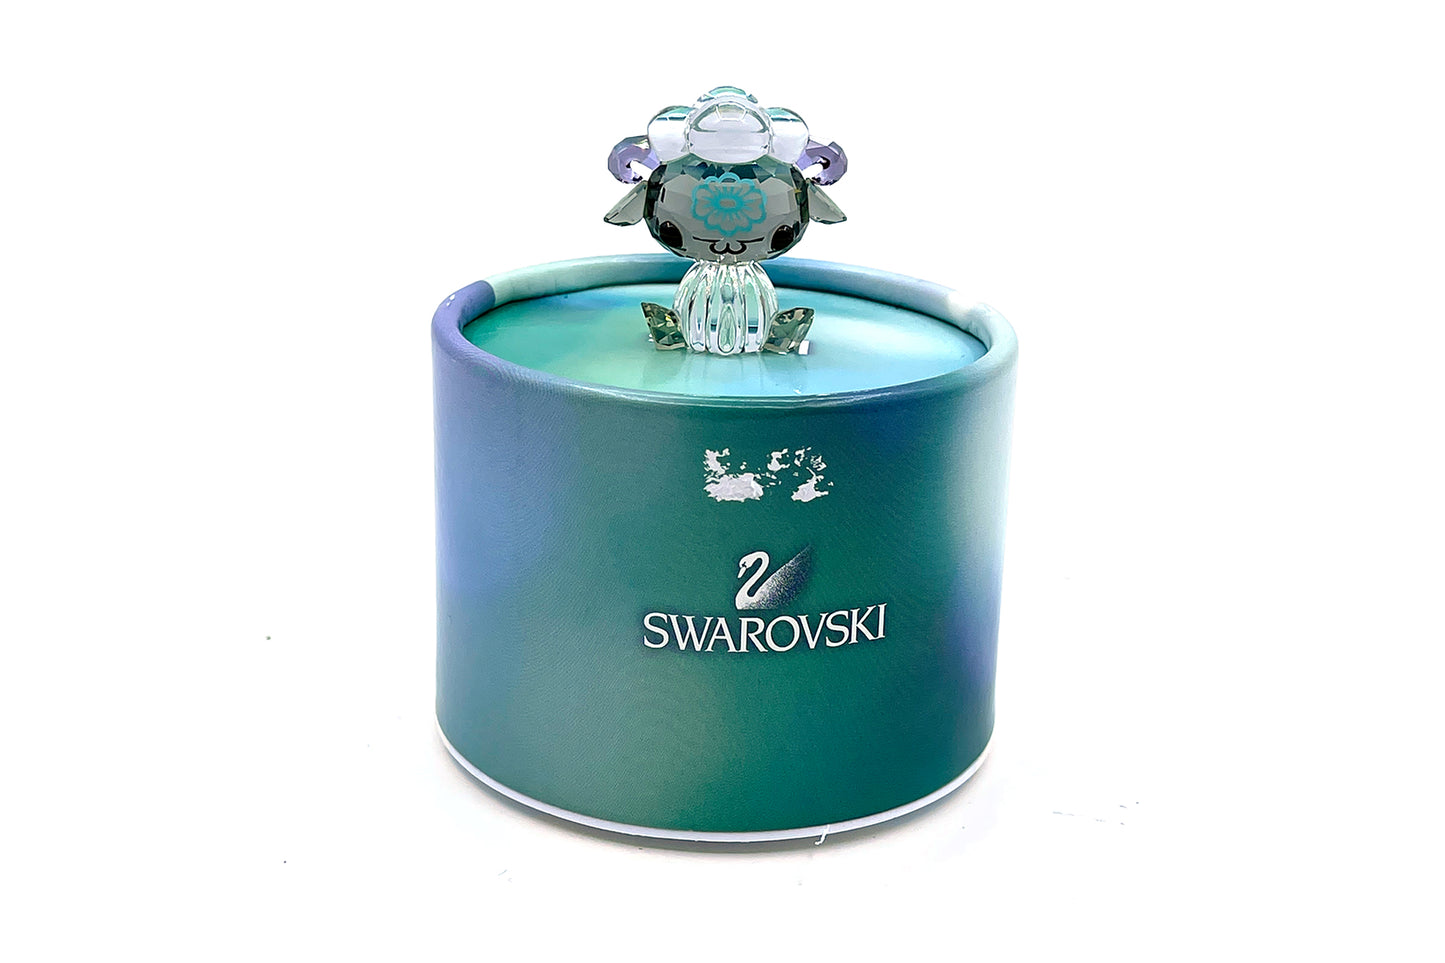 Swarovski Zodiac - Sheep With Flower (5004521)